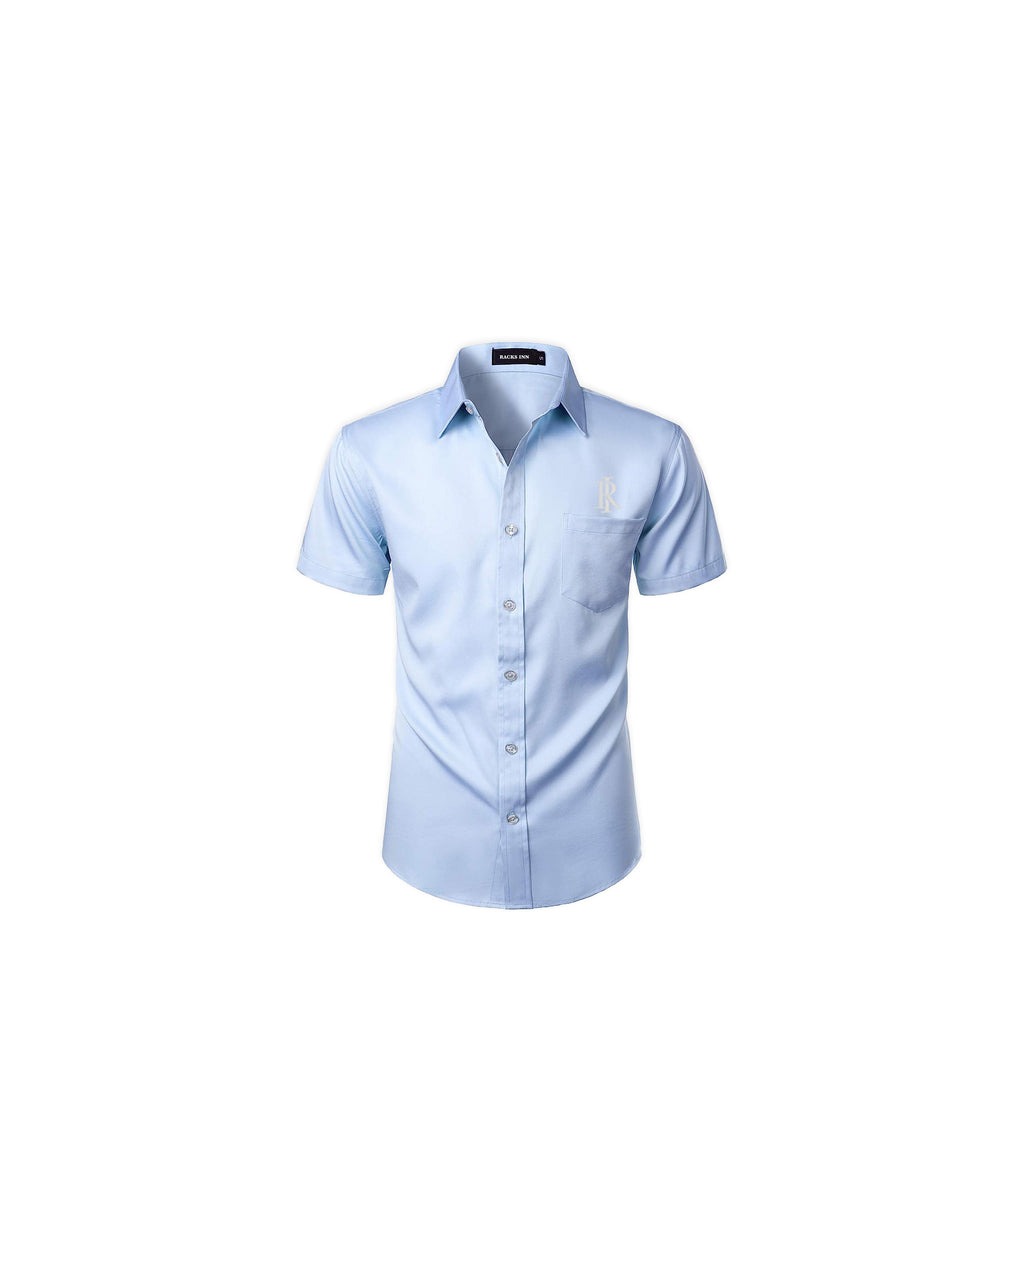 Monogram Casual Shirt - Light Blue